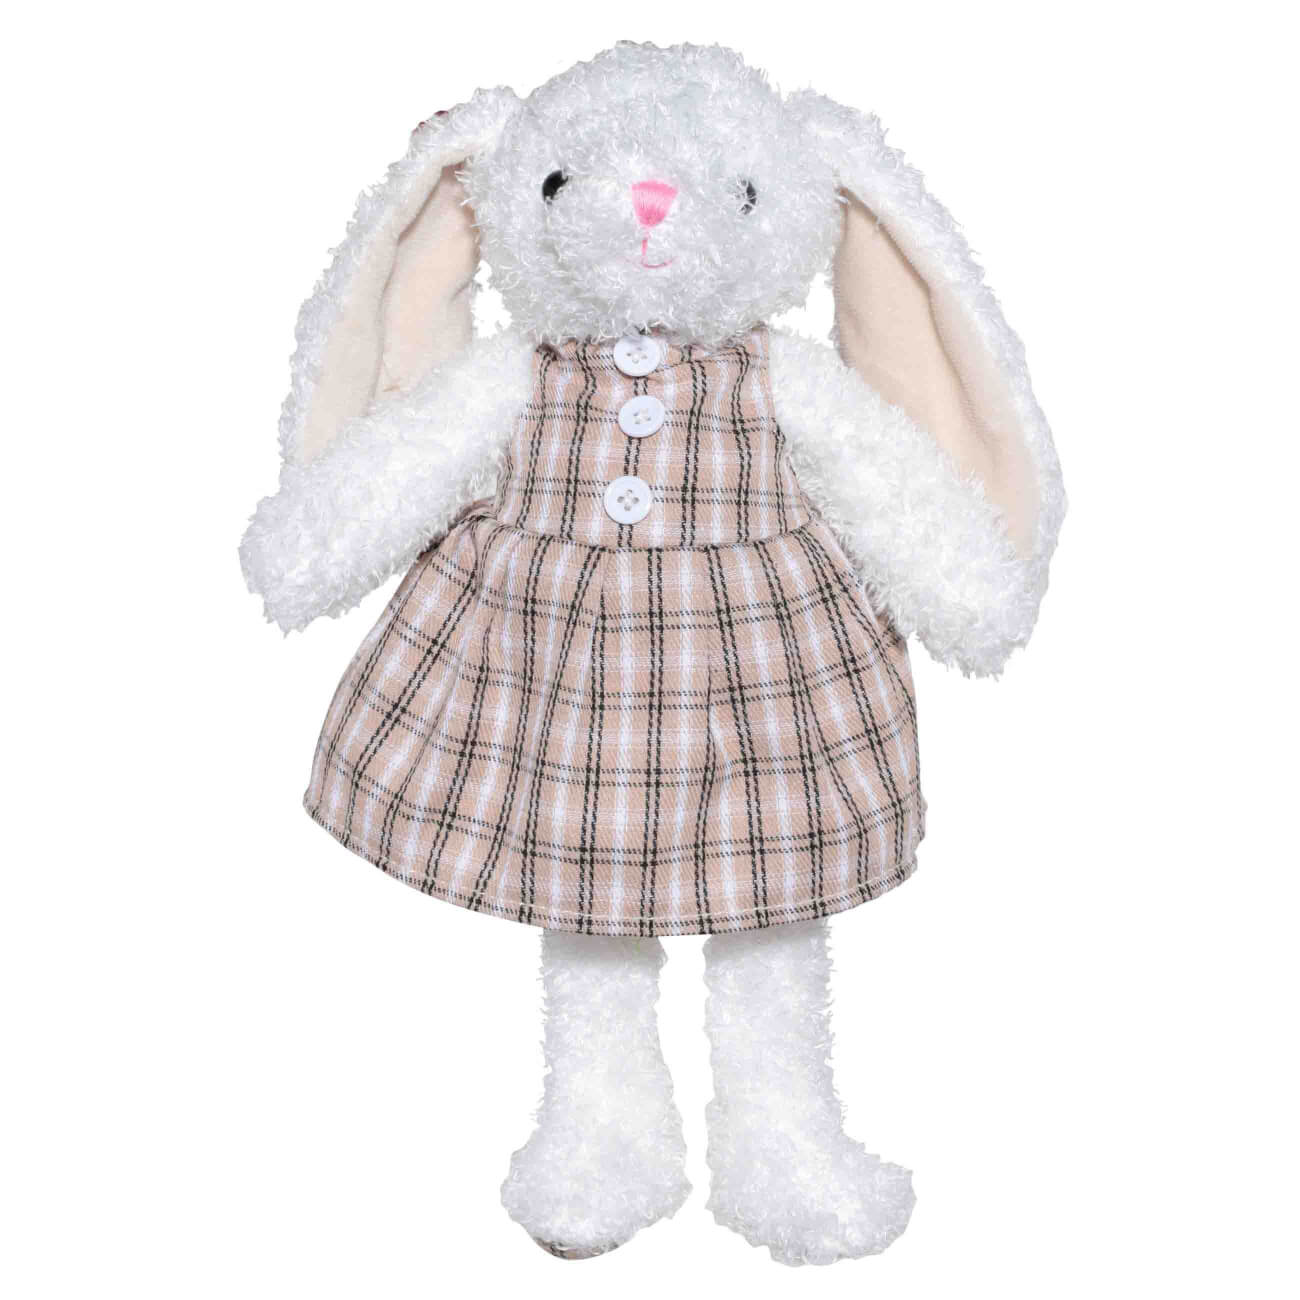 Игрушка, 21 см, мягкая, полиэстер, бежевая, Крольчиха в платье, Rabbit мягкая игрушка басик в полосатом свитере 19 см